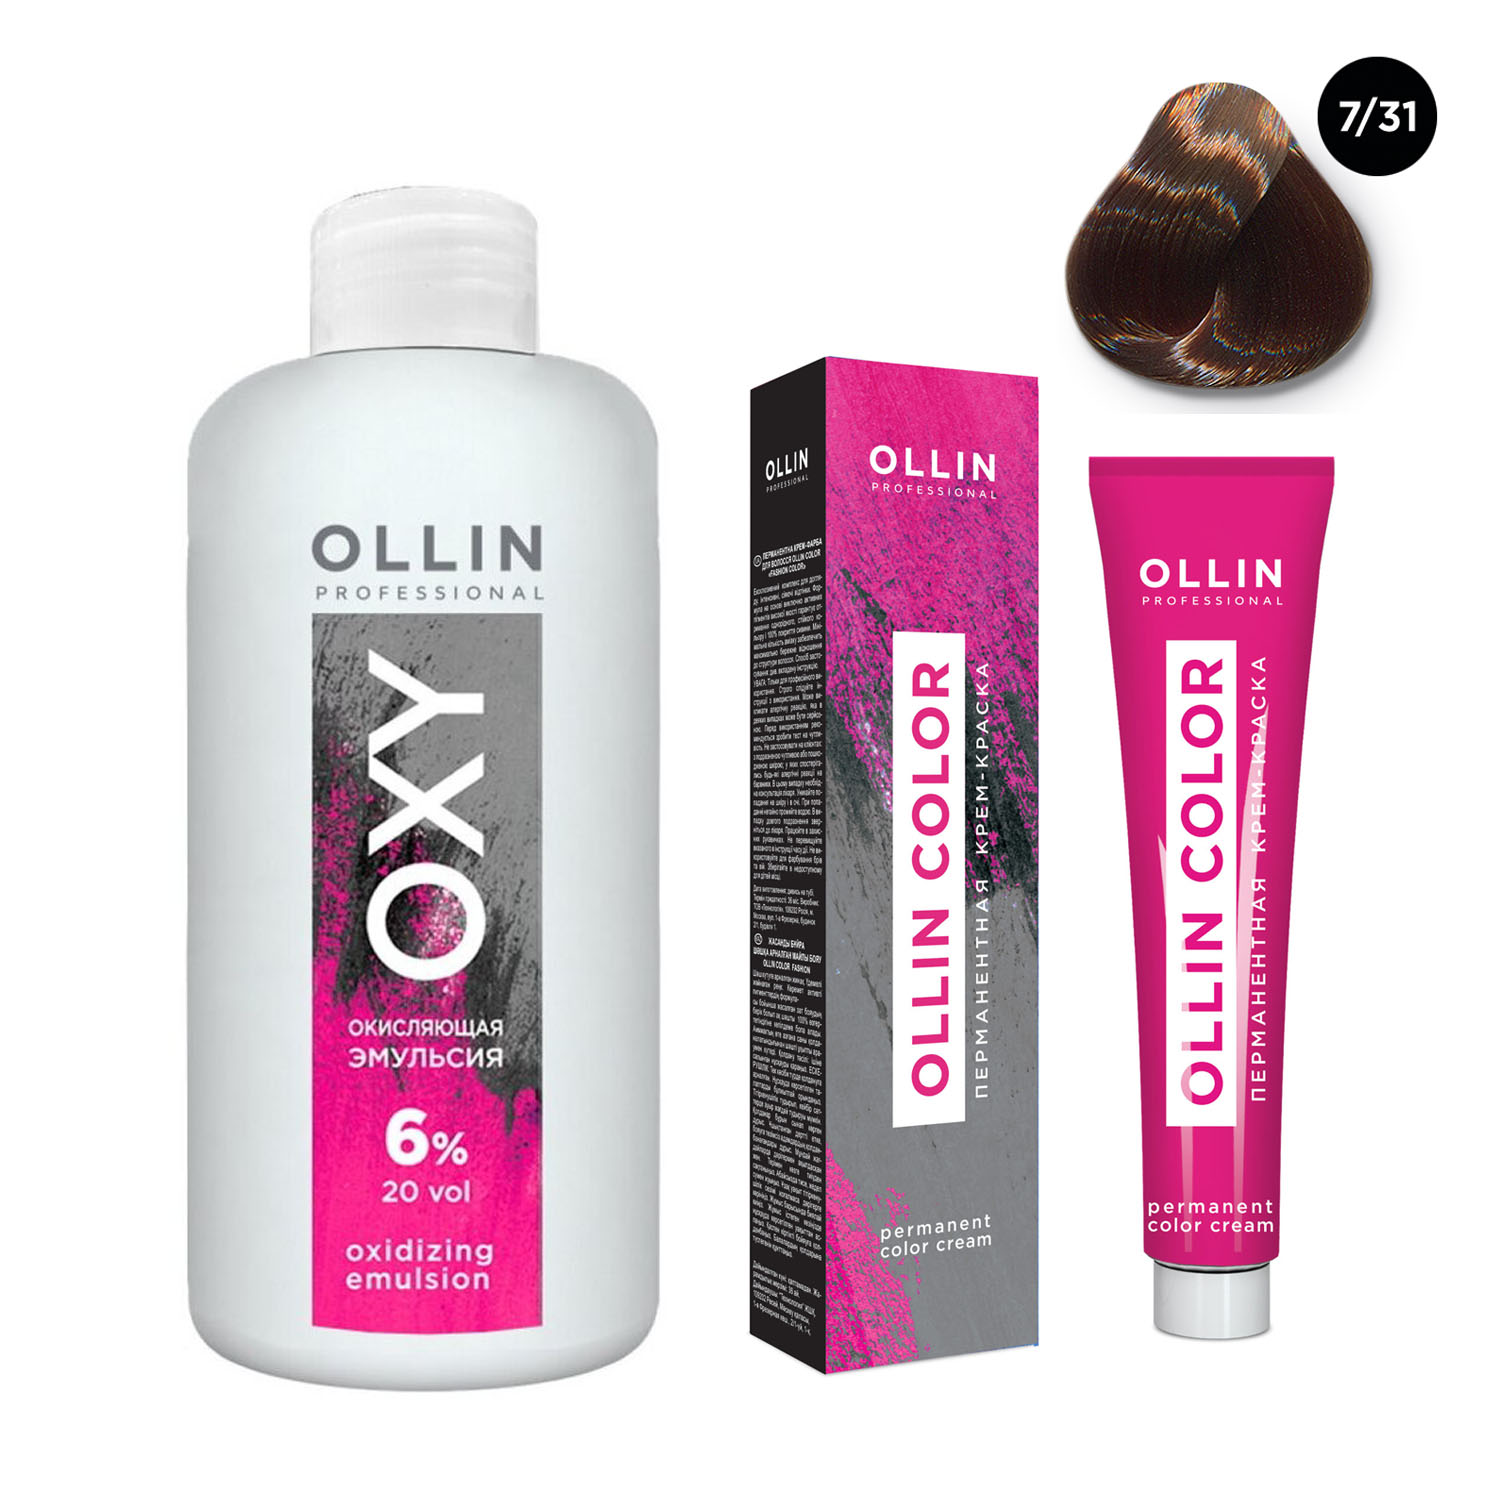 Ollin Professional Набор Перманентная крем-краска для волос Ollin Color оттенок 7/31 русый золотисто-пепельный 100 мл + Окисляющая эмульсия Oxy 6% 150 мл (Ollin Professional, Ollin Color)